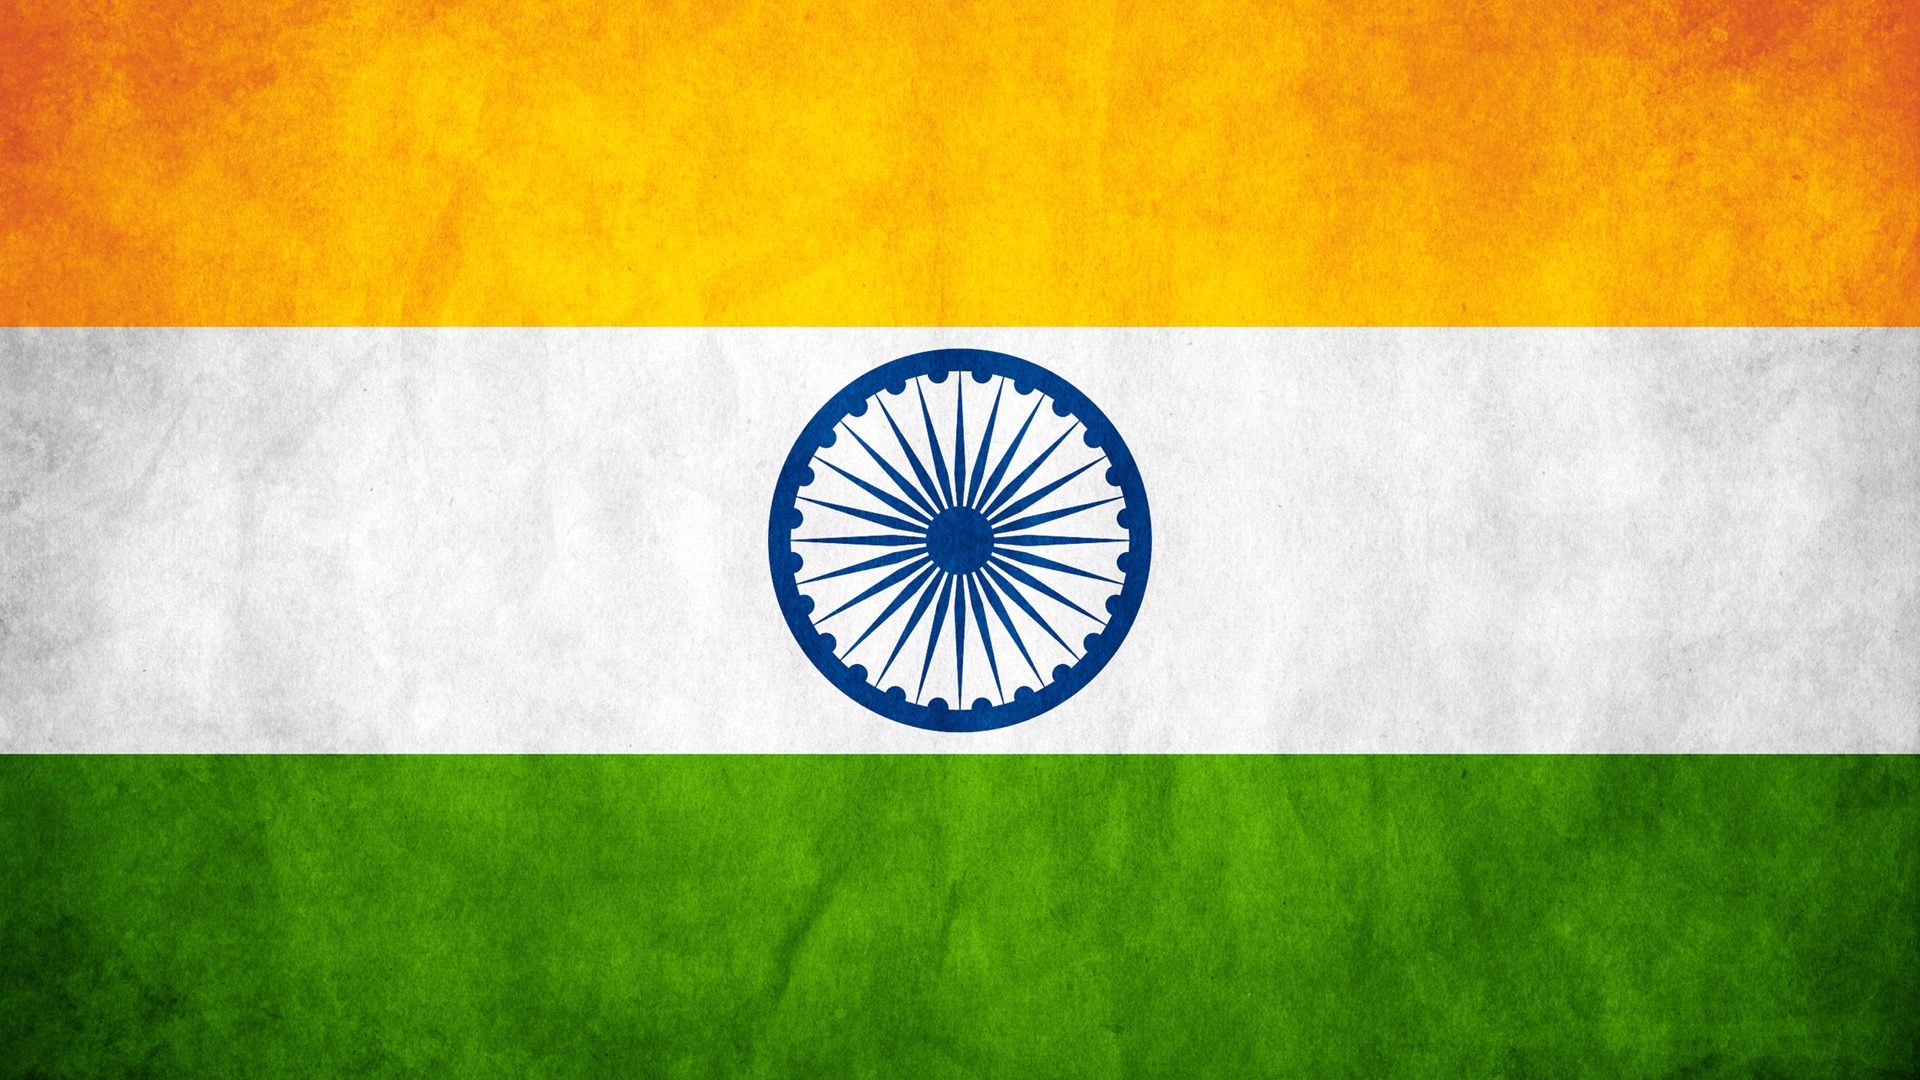 인도 국기 공화국의 날 벽지,깃발,폰트,하늘,원,경치